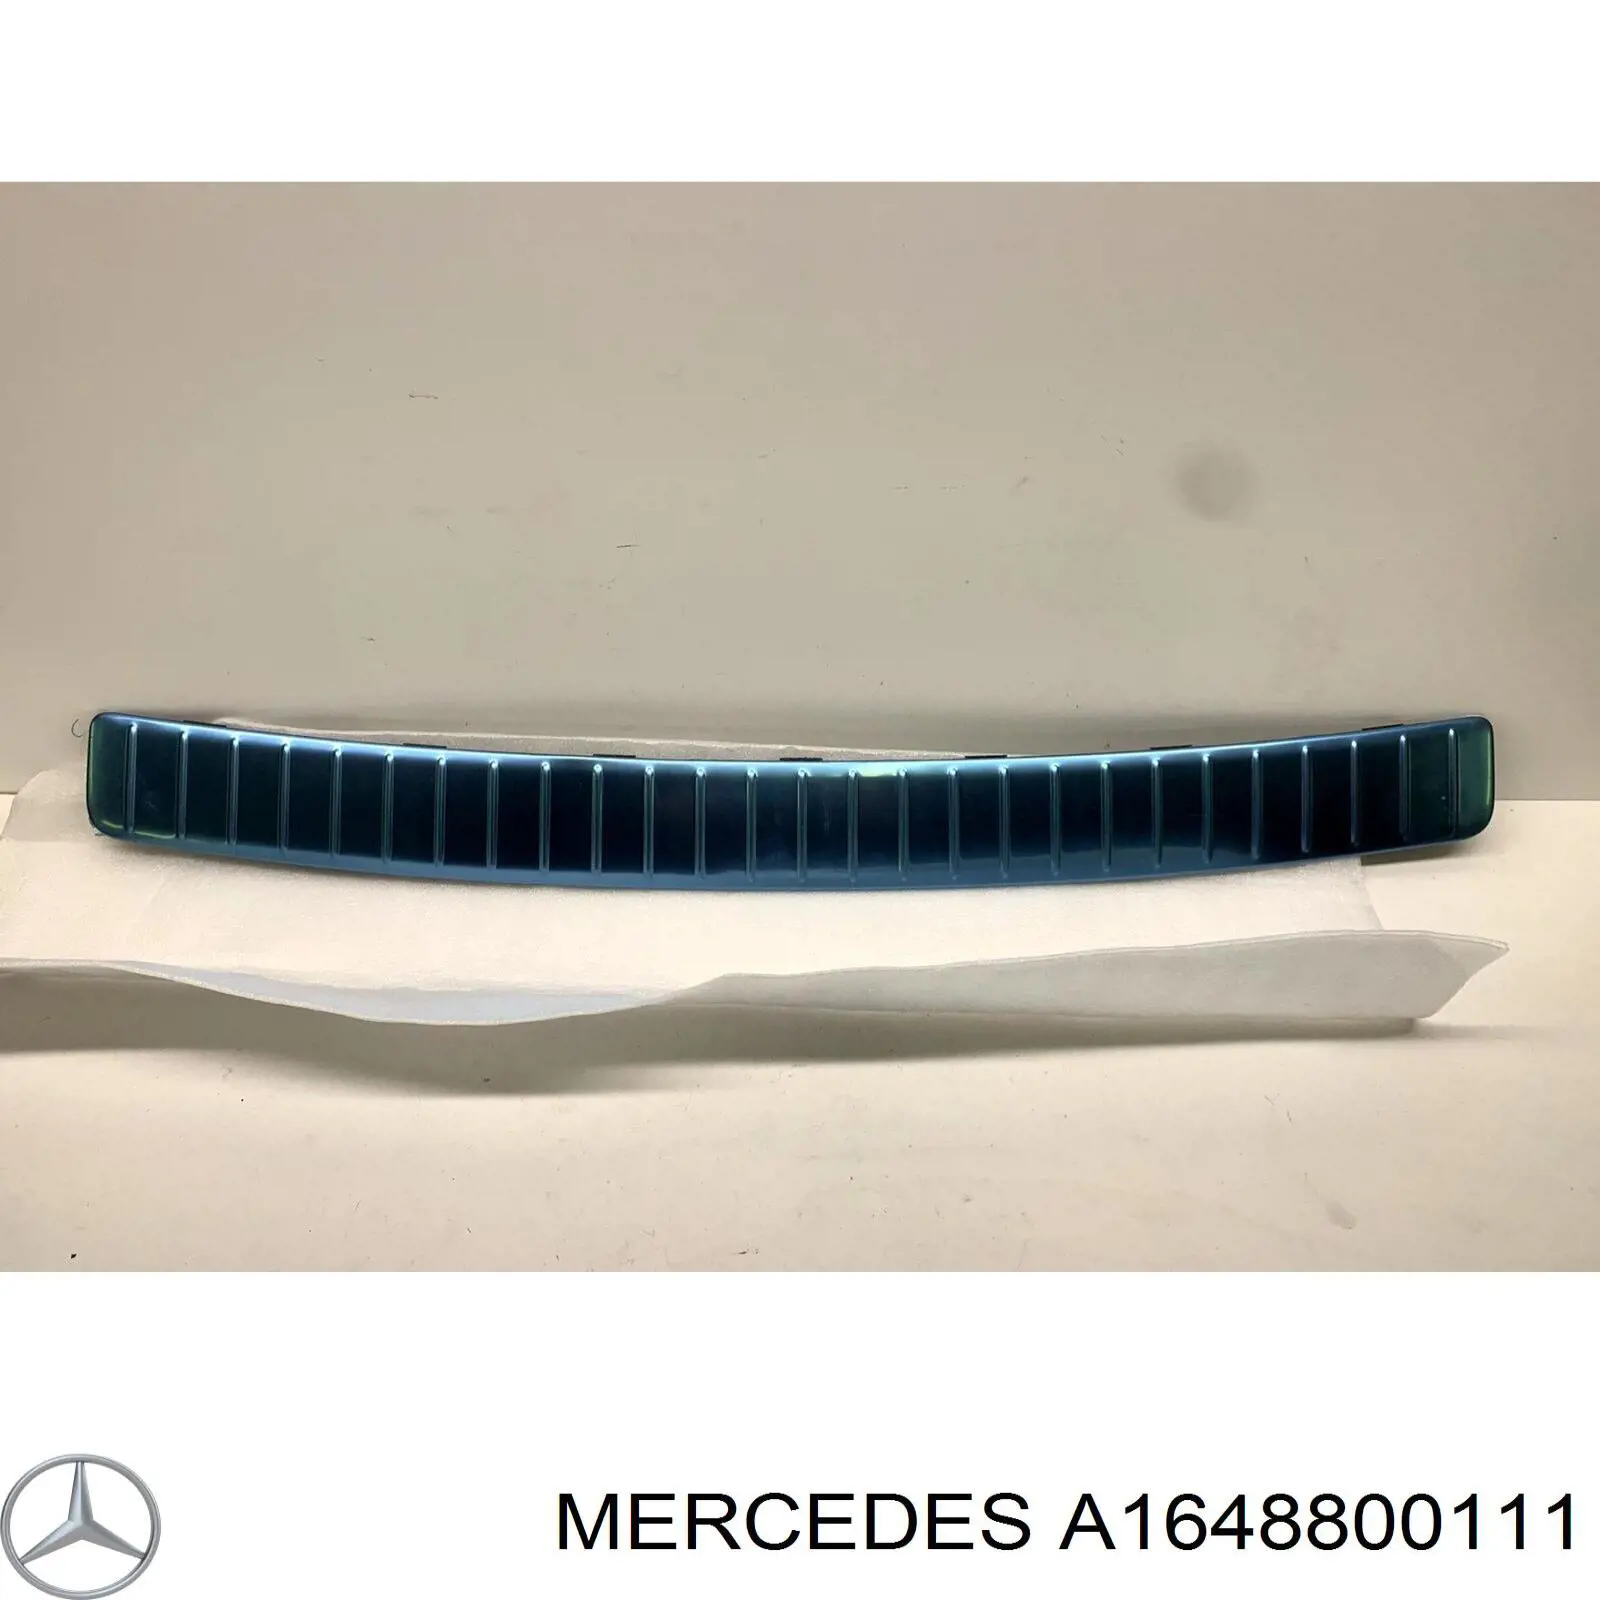 A1648800111 Mercedes накладка бампера заднего верхняя защитная (ступень-подножка)